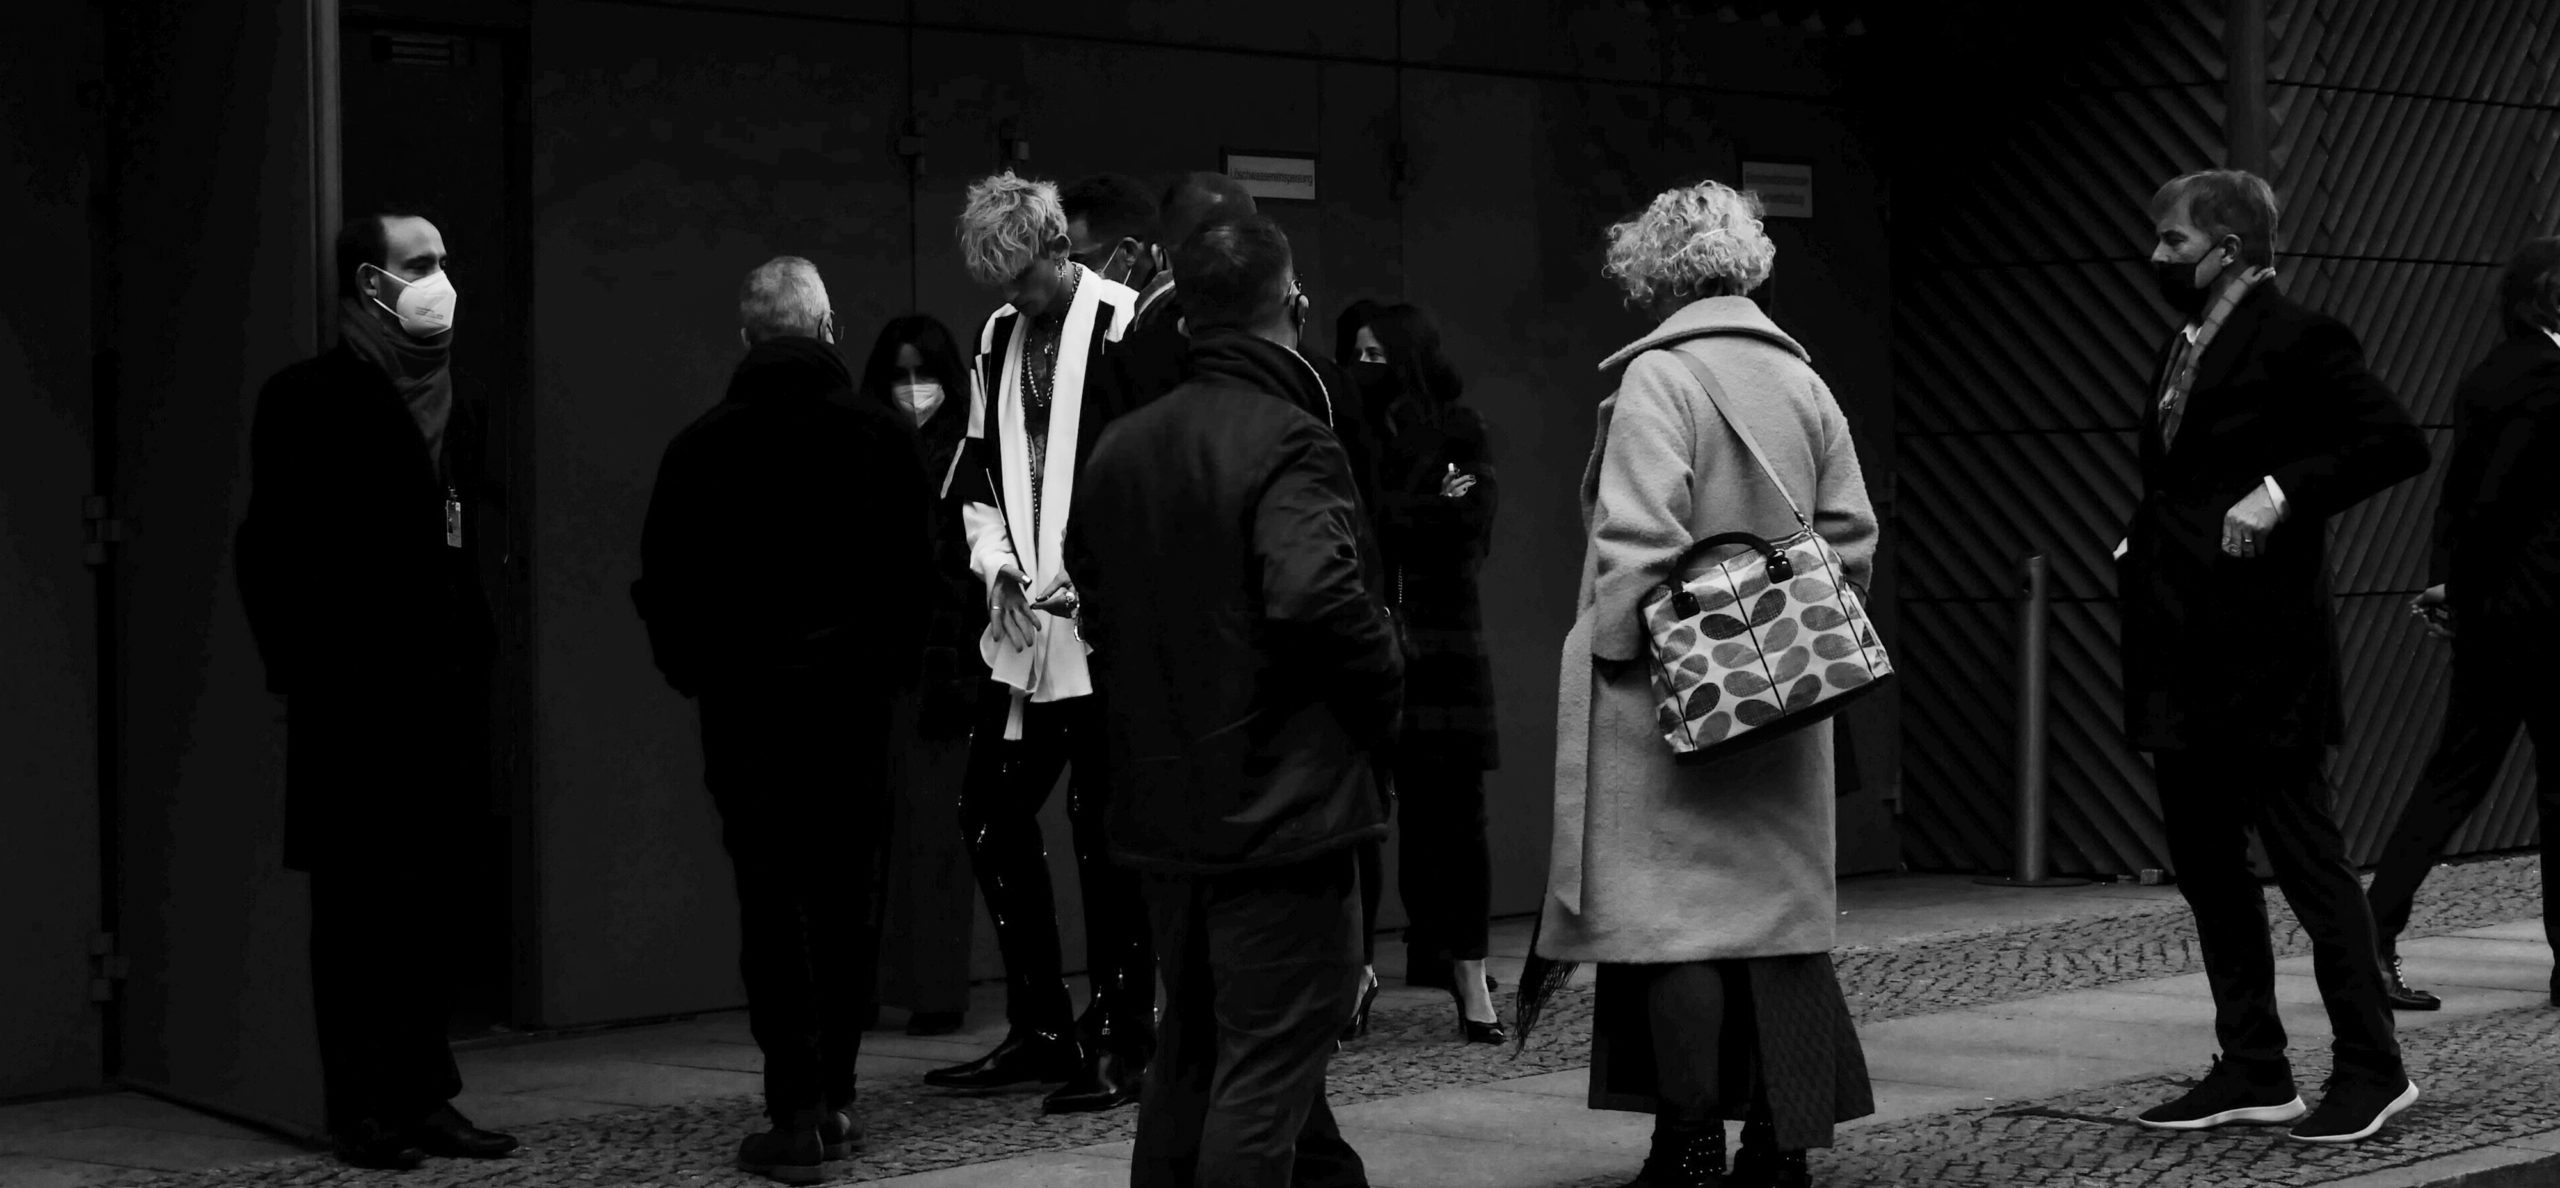 Die Berlinale während der Pandemie, festgehalten von Gina Carroccia. Foto: Gina Carroccia / onscene 2022